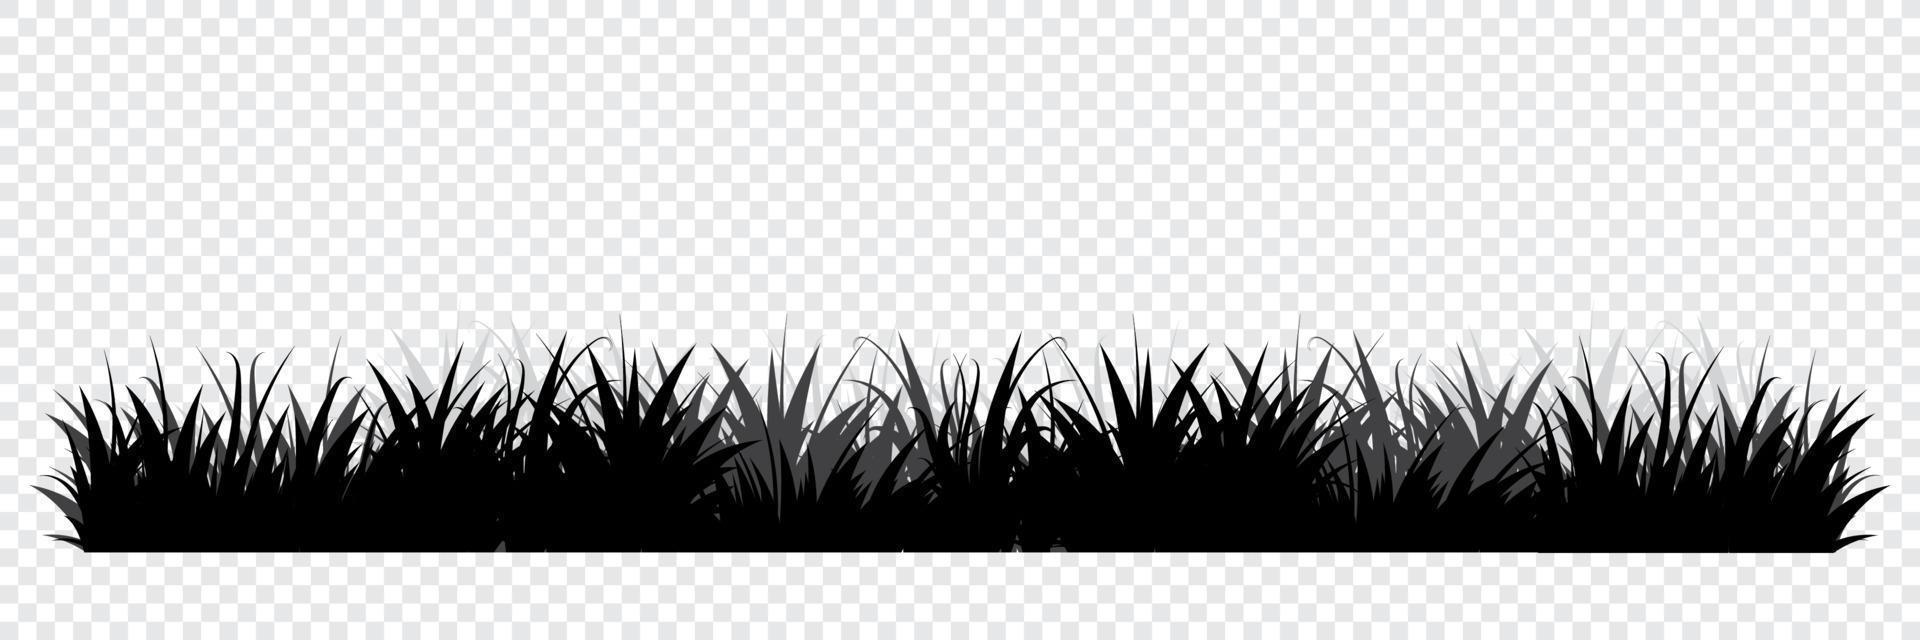 siluetas negras de hierba. fondo floral. hierba salvaje silueta de bordes de hierba. ilustración vectorial vector